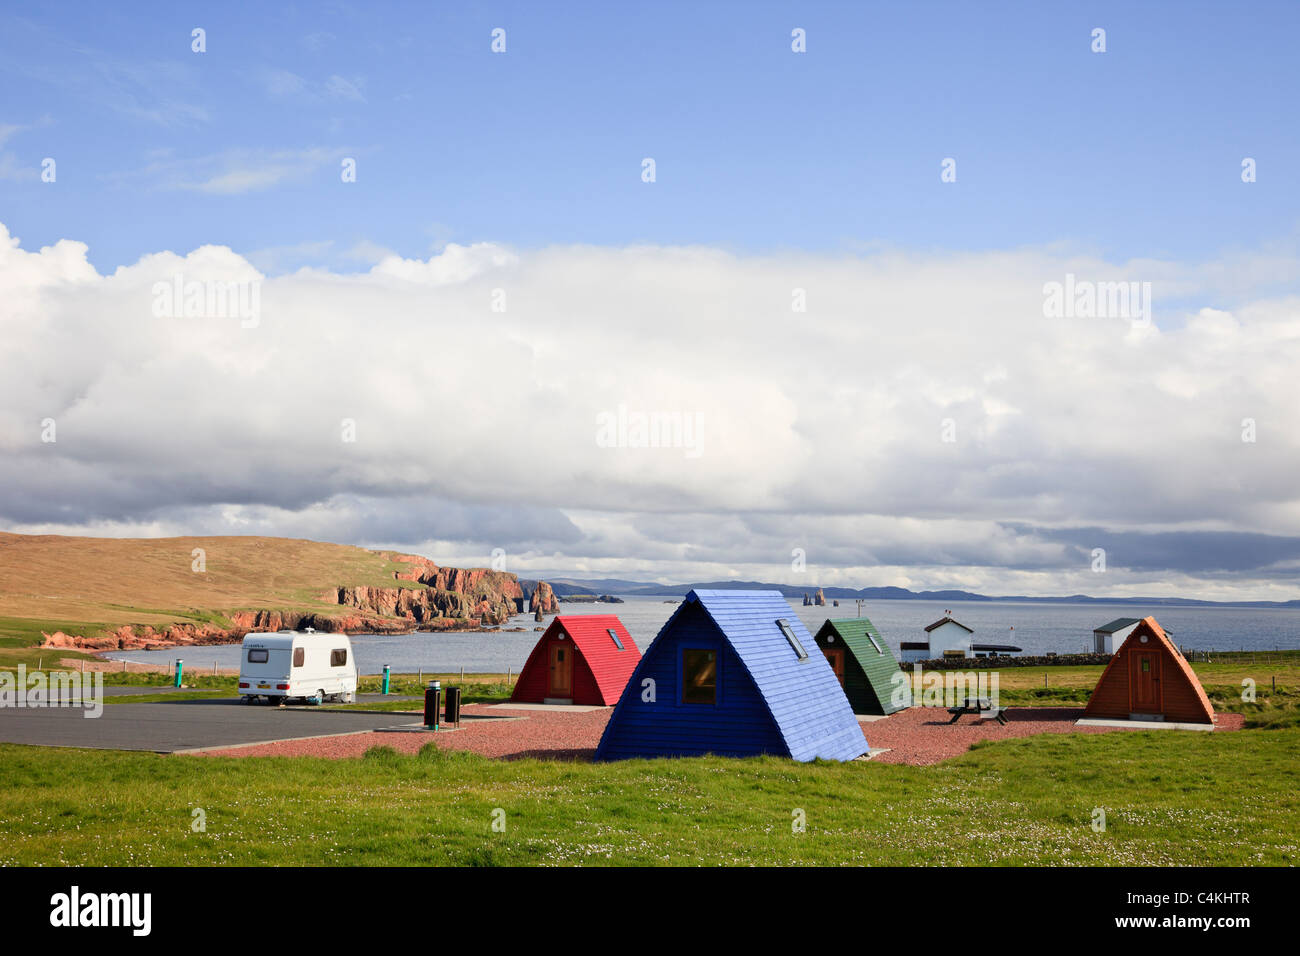 Hölzerne Wigwams in Braewick Cafe Campingplatz an der Küste mit Blick auf das Meer. Eshaness, Shetland Islands, Schottland, Großbritannien Stockfoto